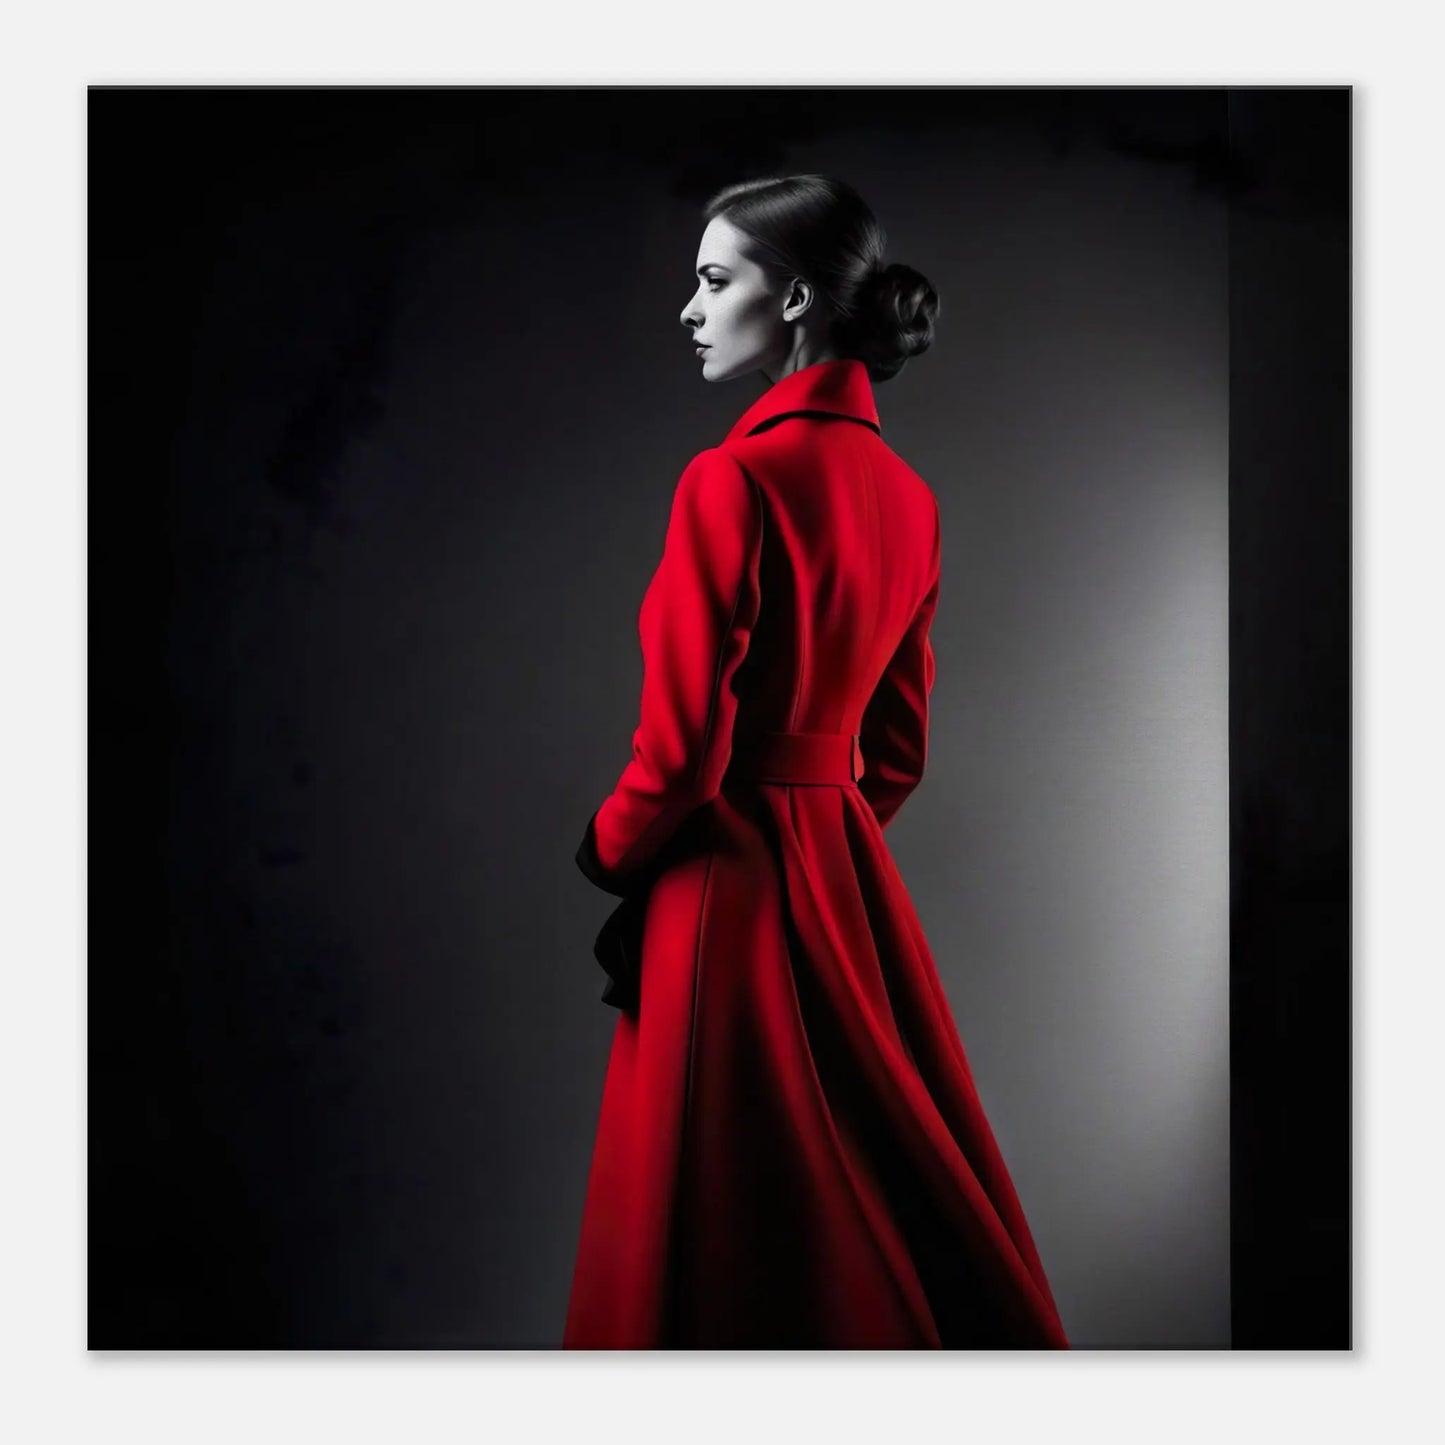 Leinwandbild - Frau im roten Mantel - Schwarz-Weiß Stil, KI-Kunst - RolConArt, Schwarz-Weiß mit Akzentfarben, 60x60-cm-24x24